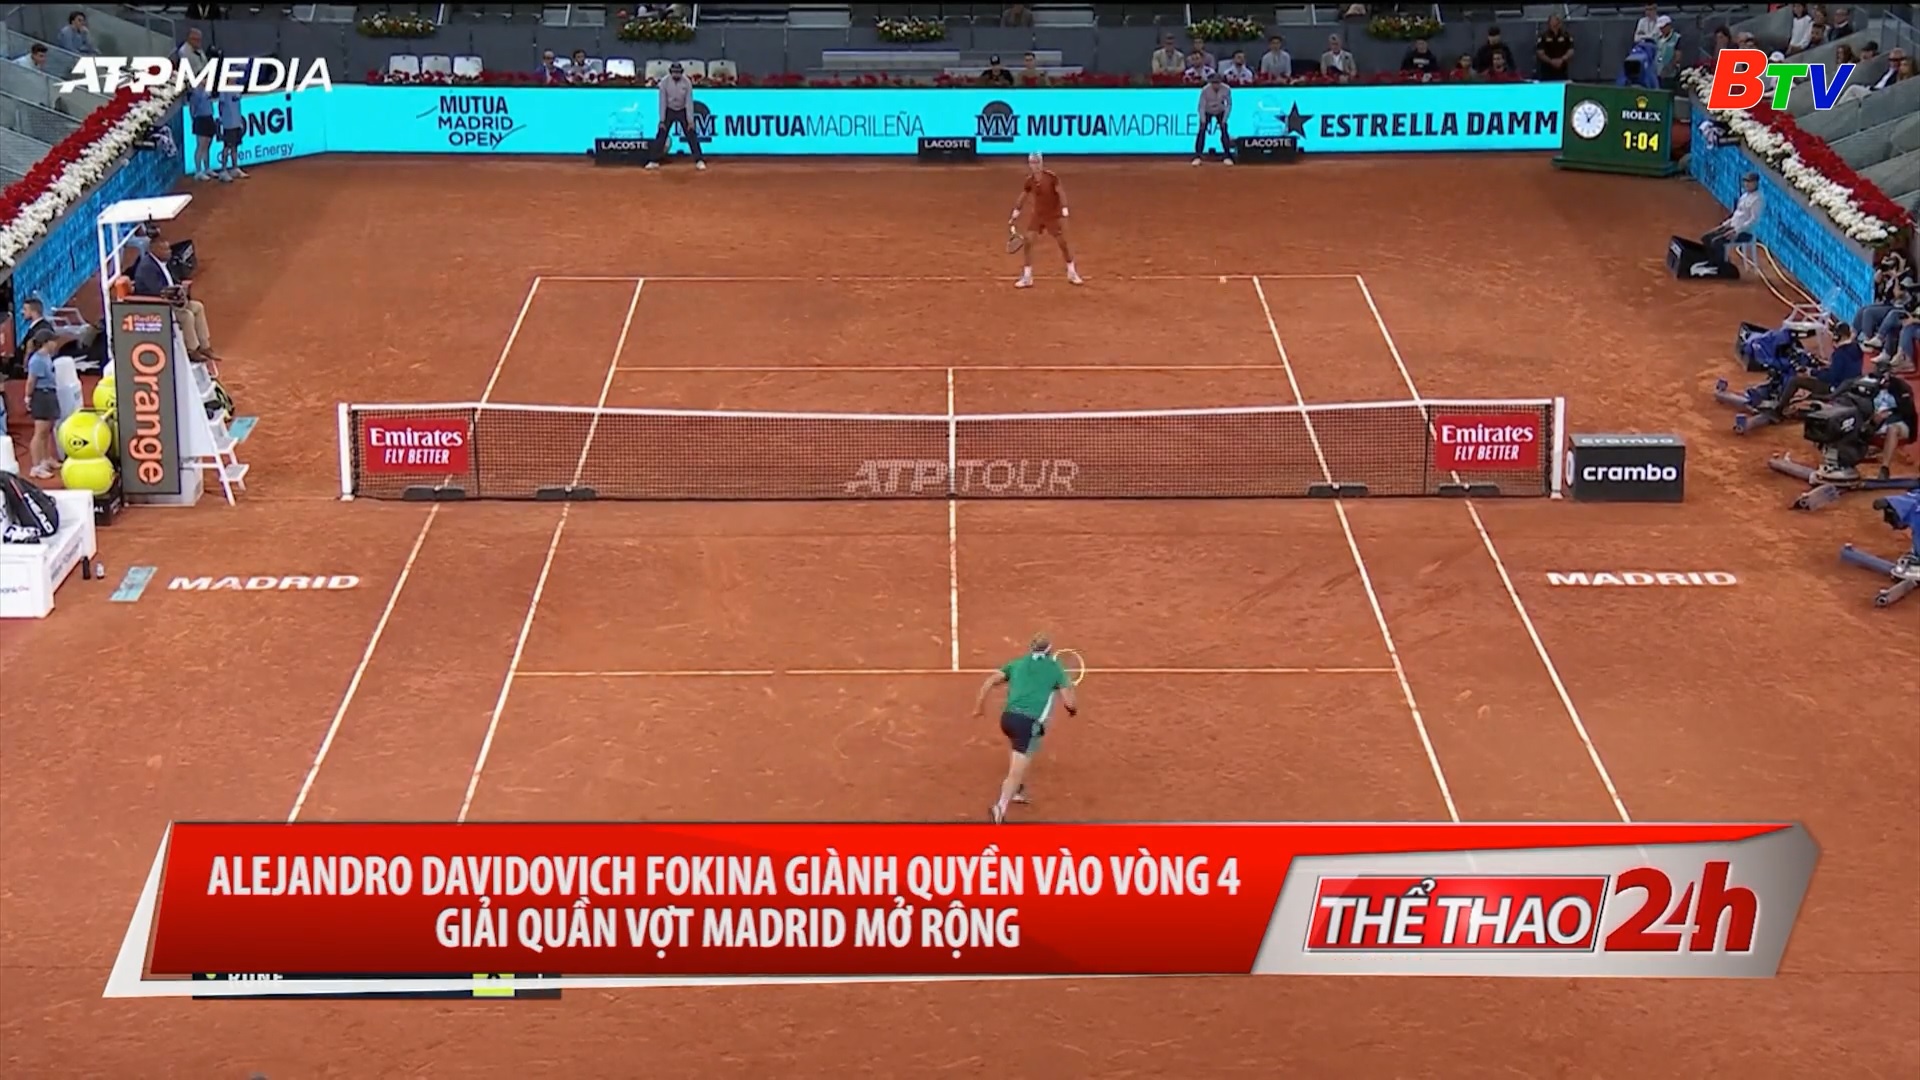 Alejandro Davidovich Fokina giành quyền vào vòng 4 giải quần vợt Madrid mở rộng